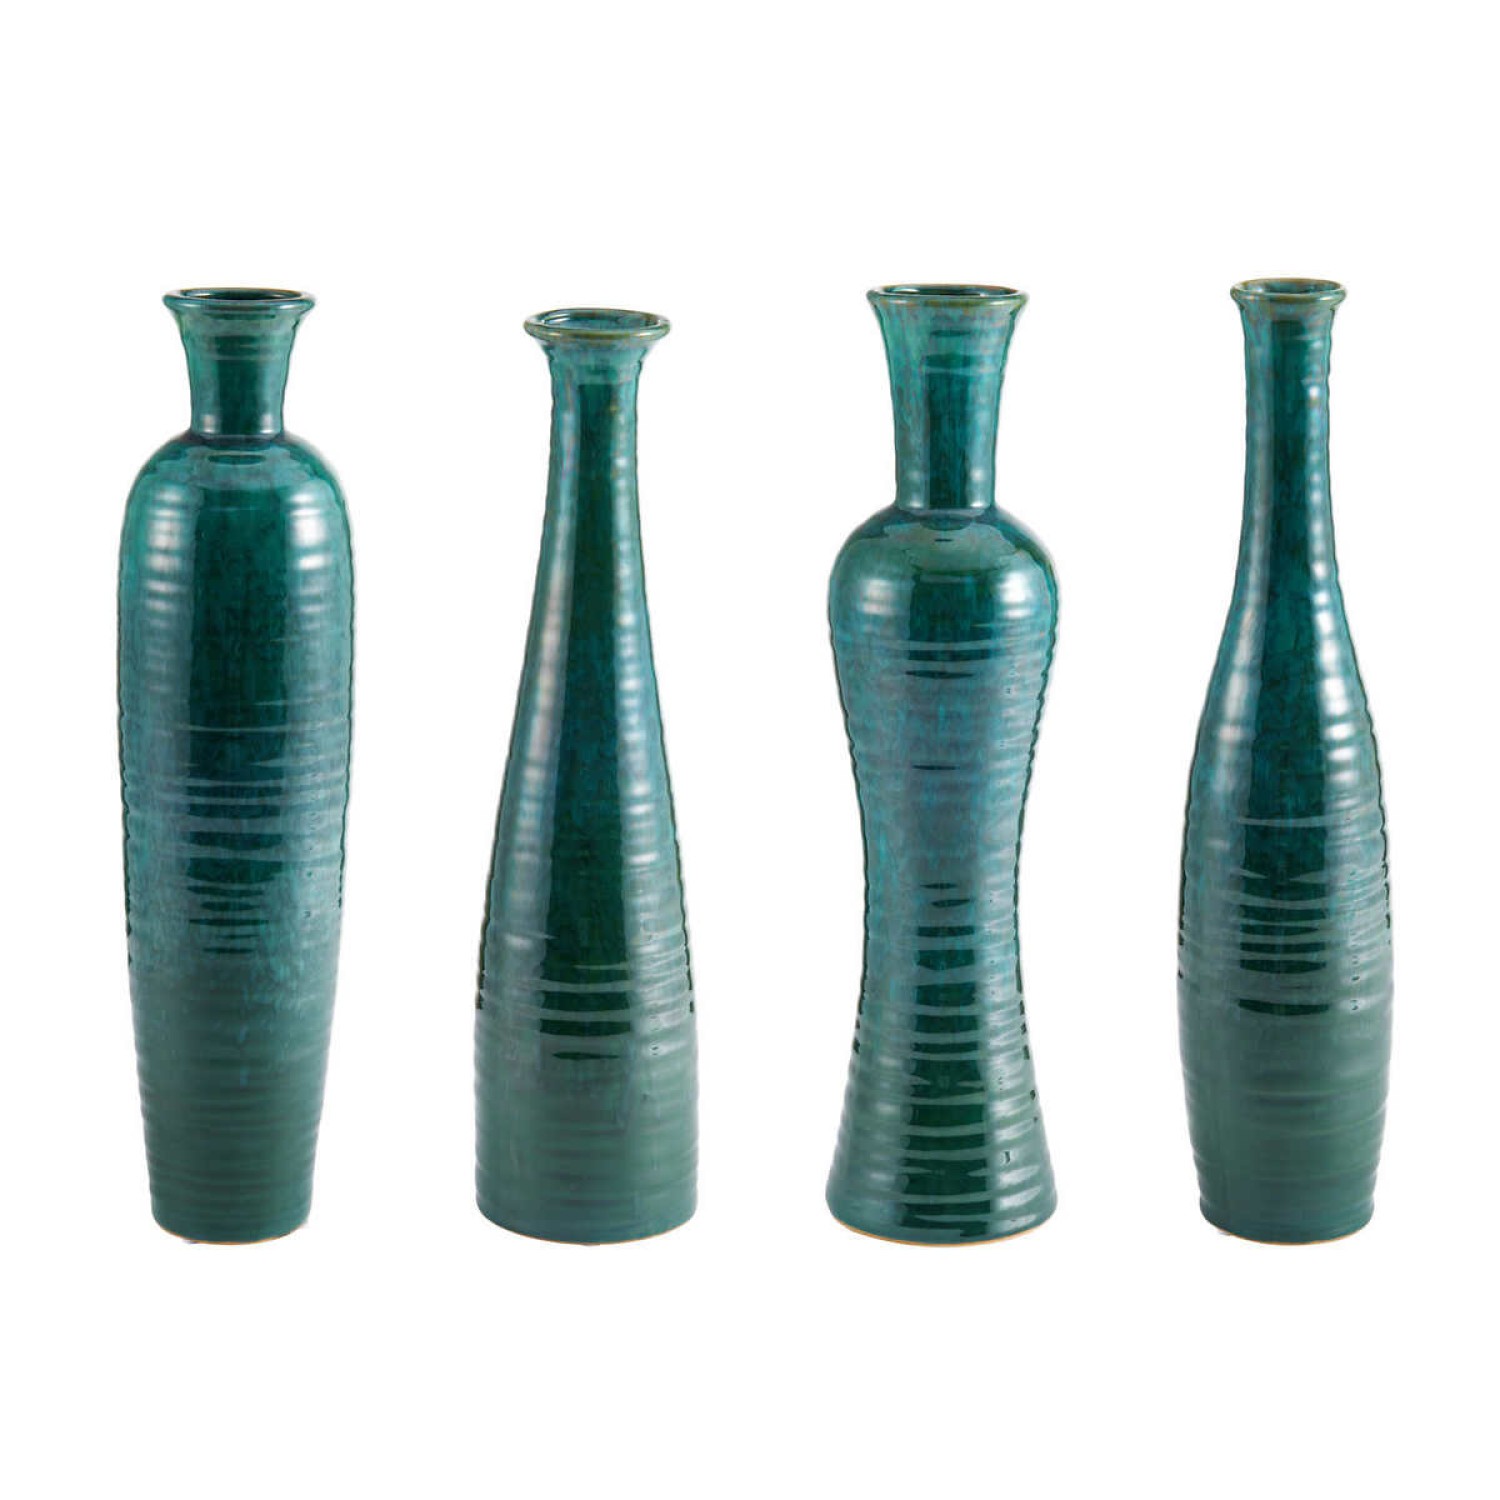 4 Elements Vase